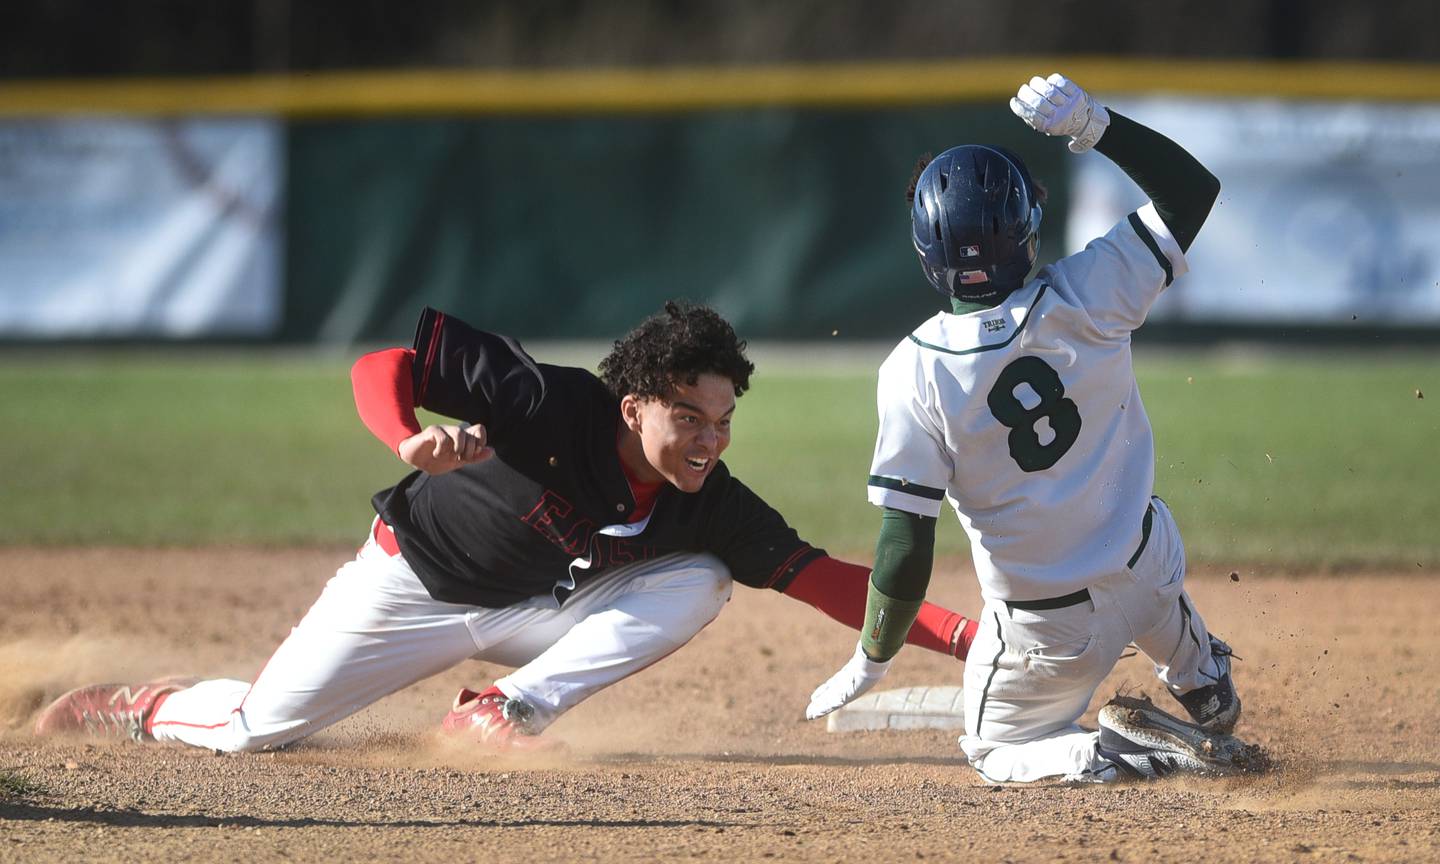 Glenbard East's Jayden Hamilton tags out Bartlett's Tyler Henricks at second base during Thursday's baseball game in Bartlett.